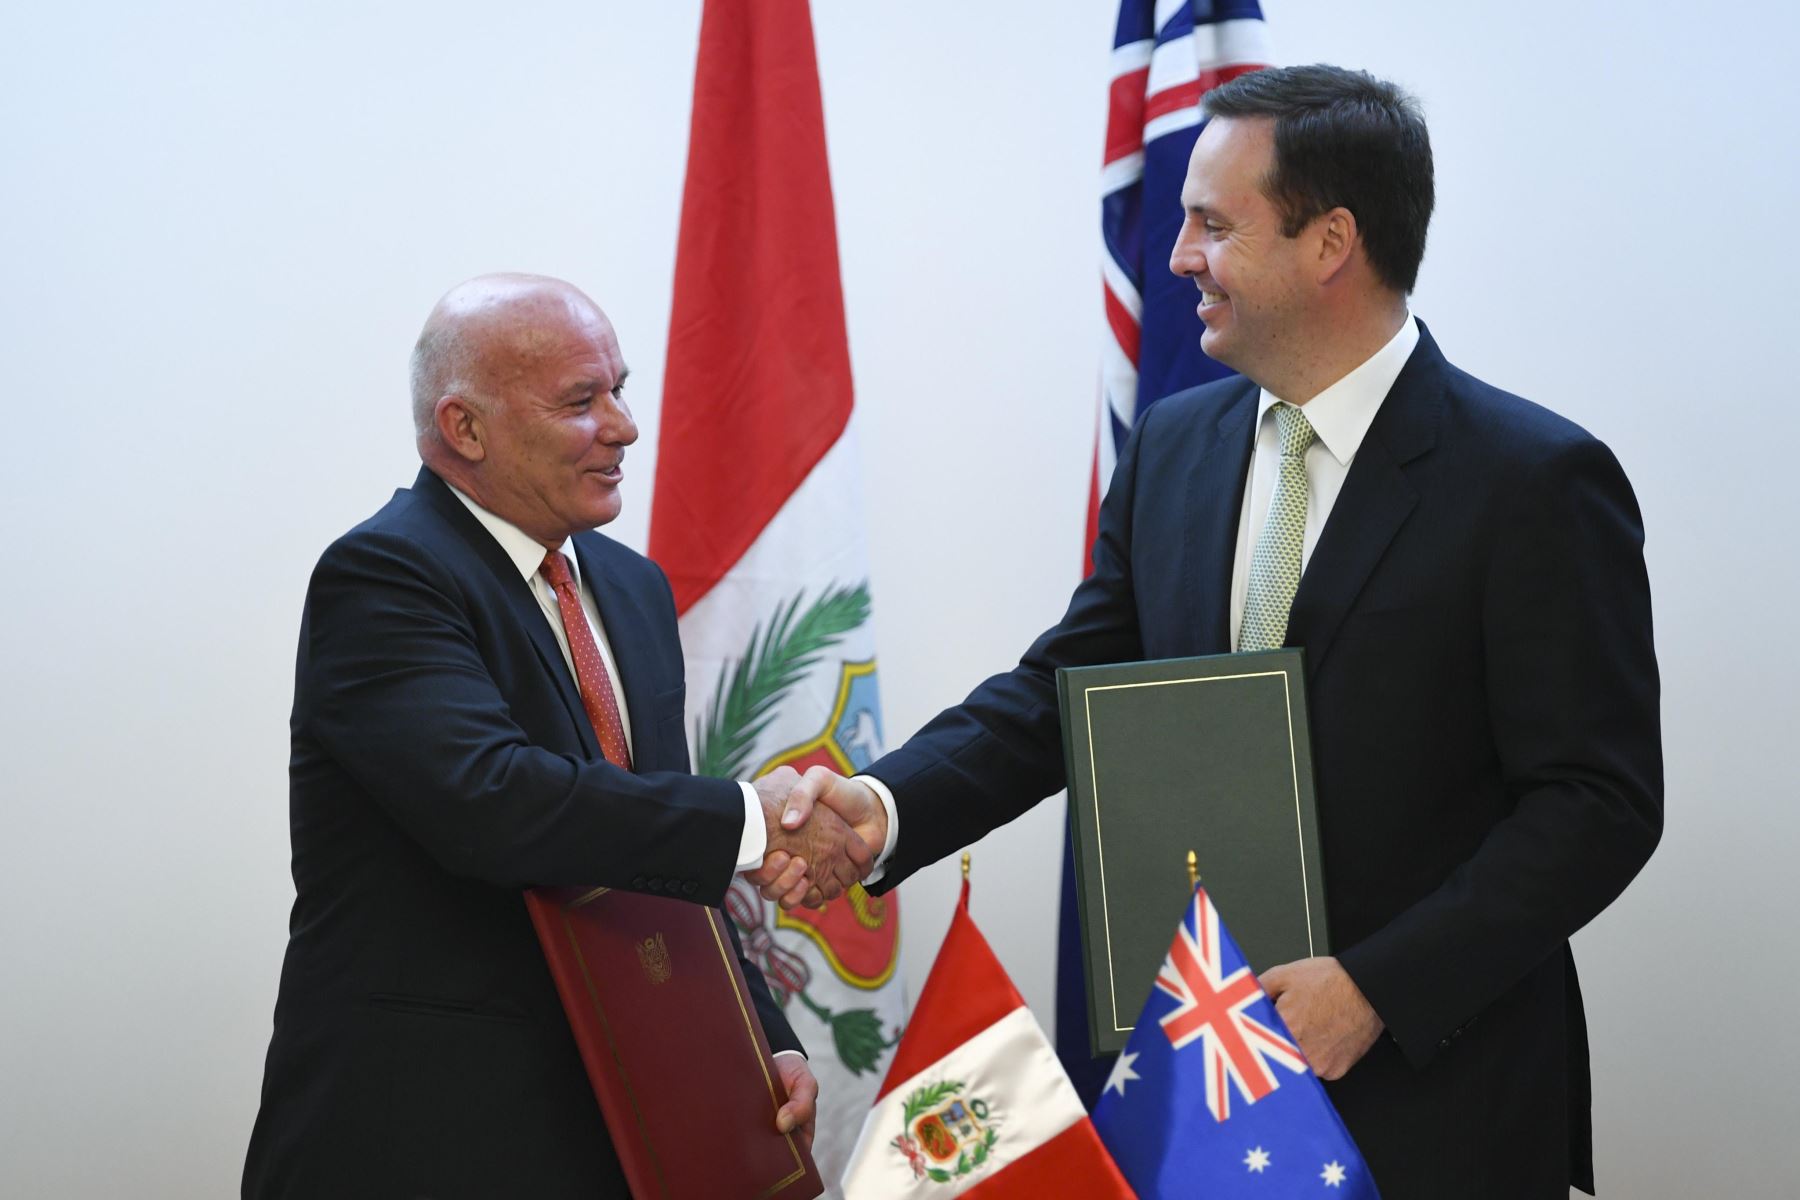 El ministro australiano de Comercio, Steve Ciobo, y su colega peruano, Eduardo Ferreyros, firmaron en Canberra un tratado de libre comercio. Foto: EFE